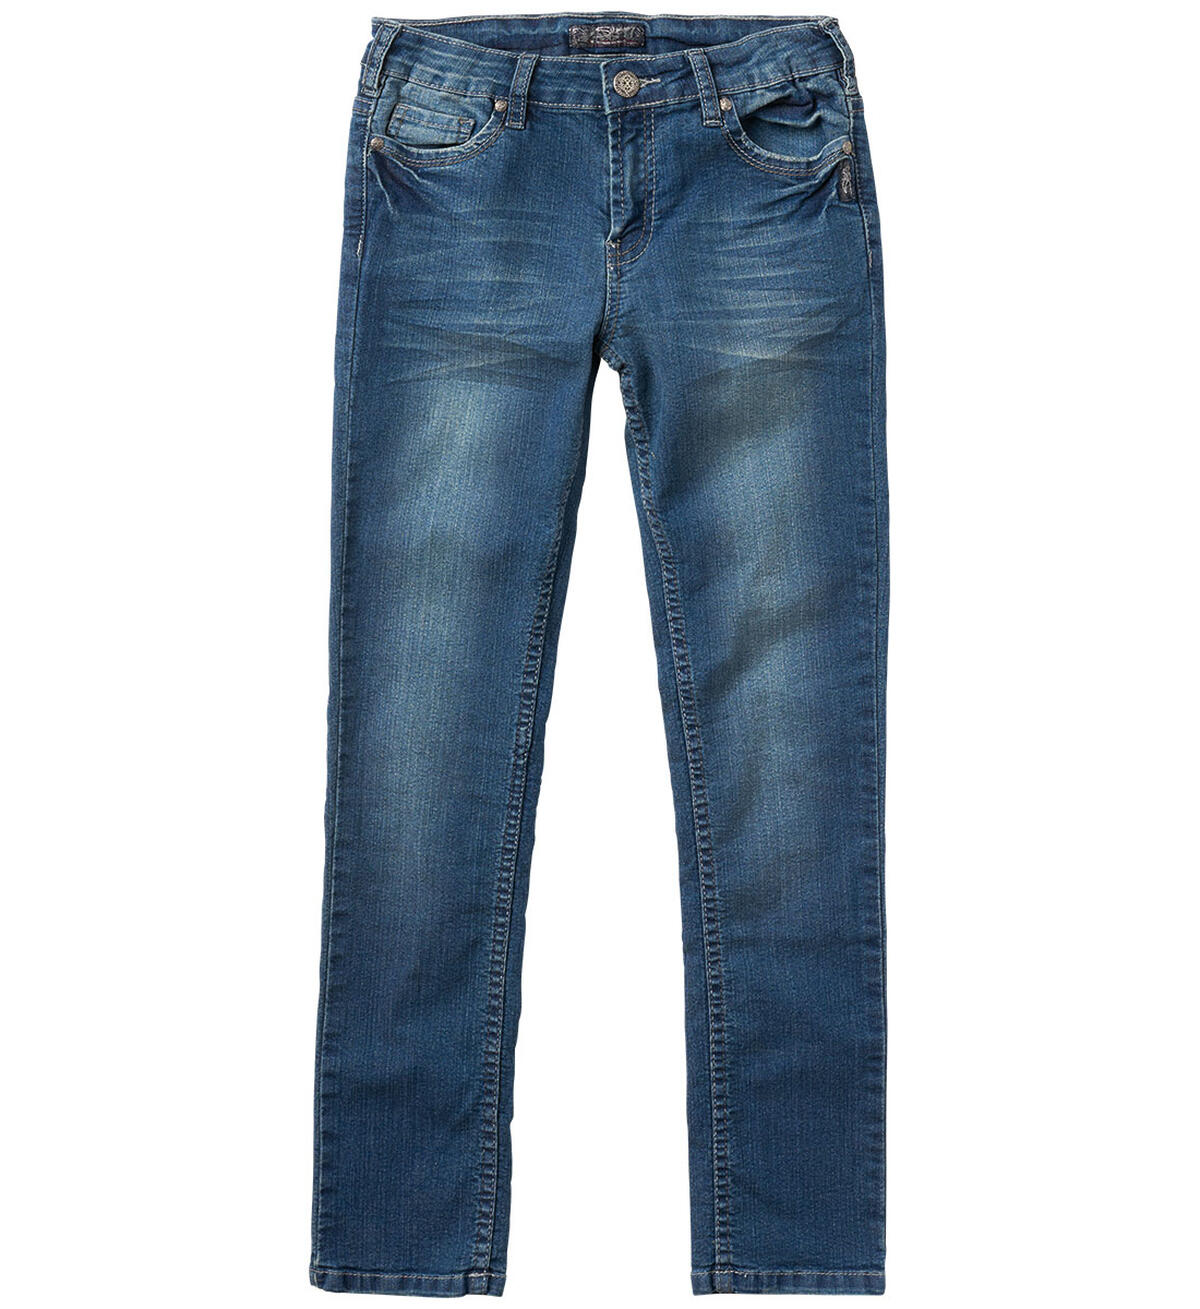 Sasha Skinny Jeans in Medium Wash (7-16), , hi-res image number 0